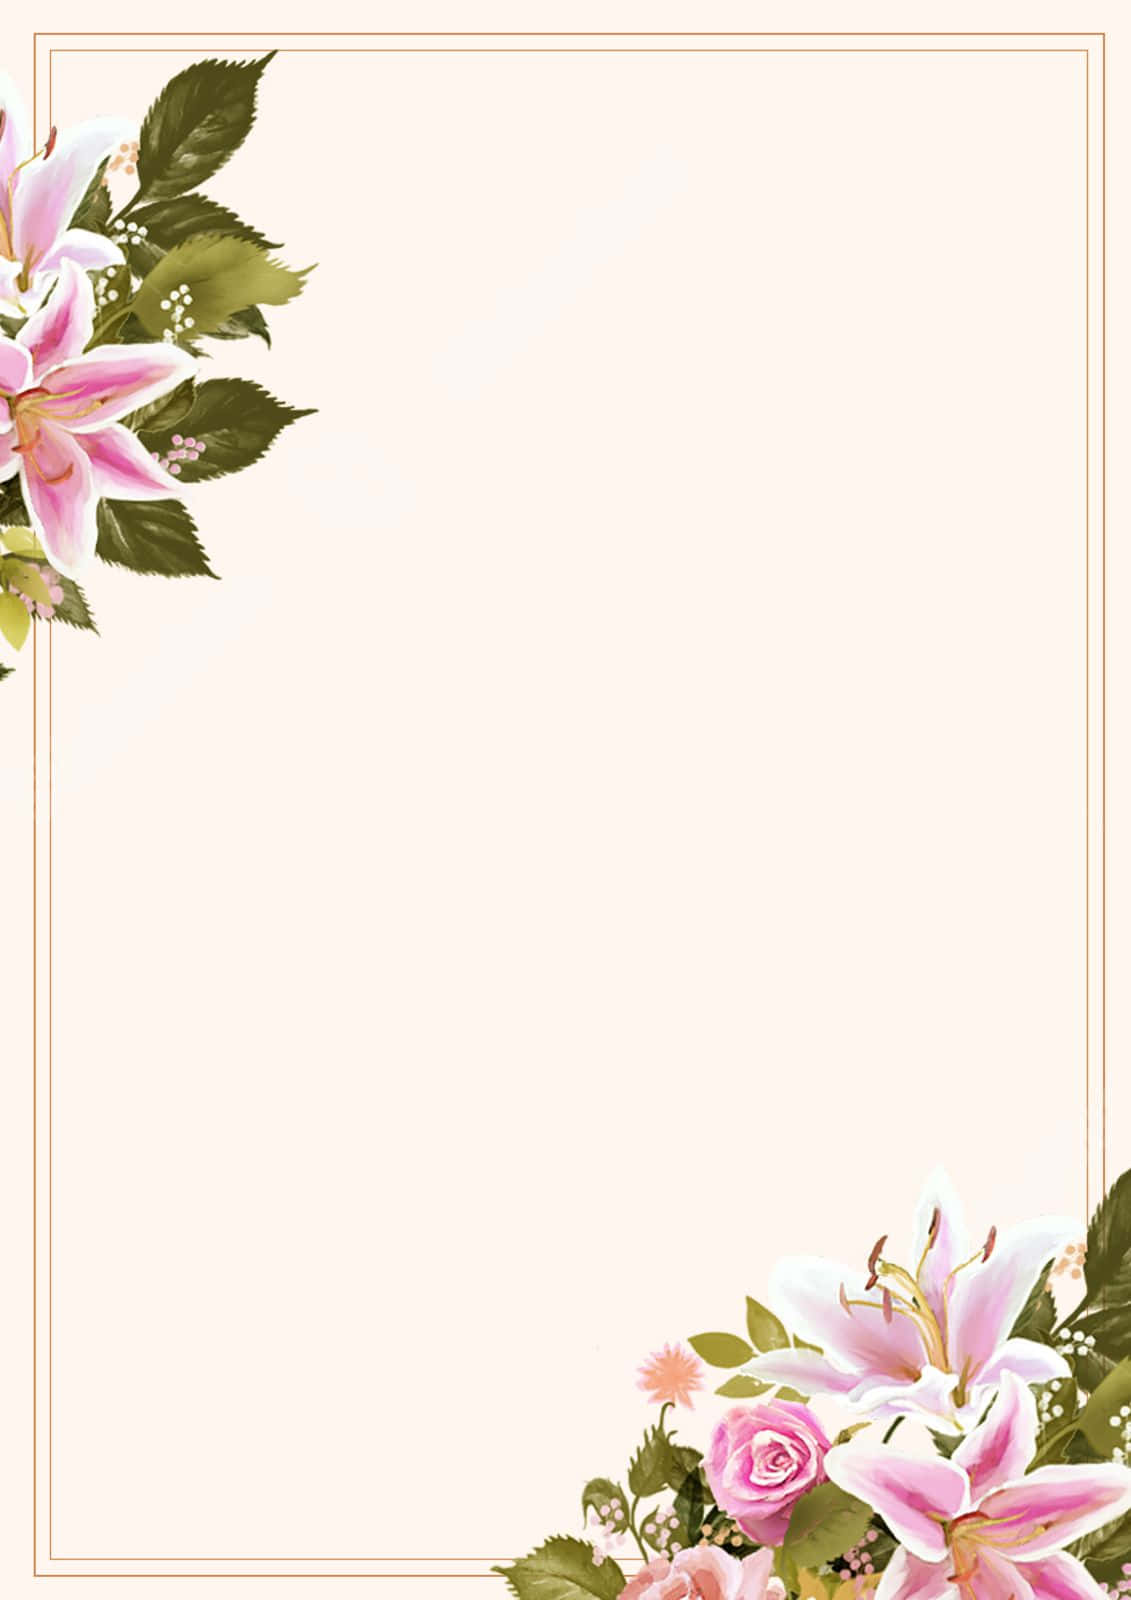 Floral Page Border Design